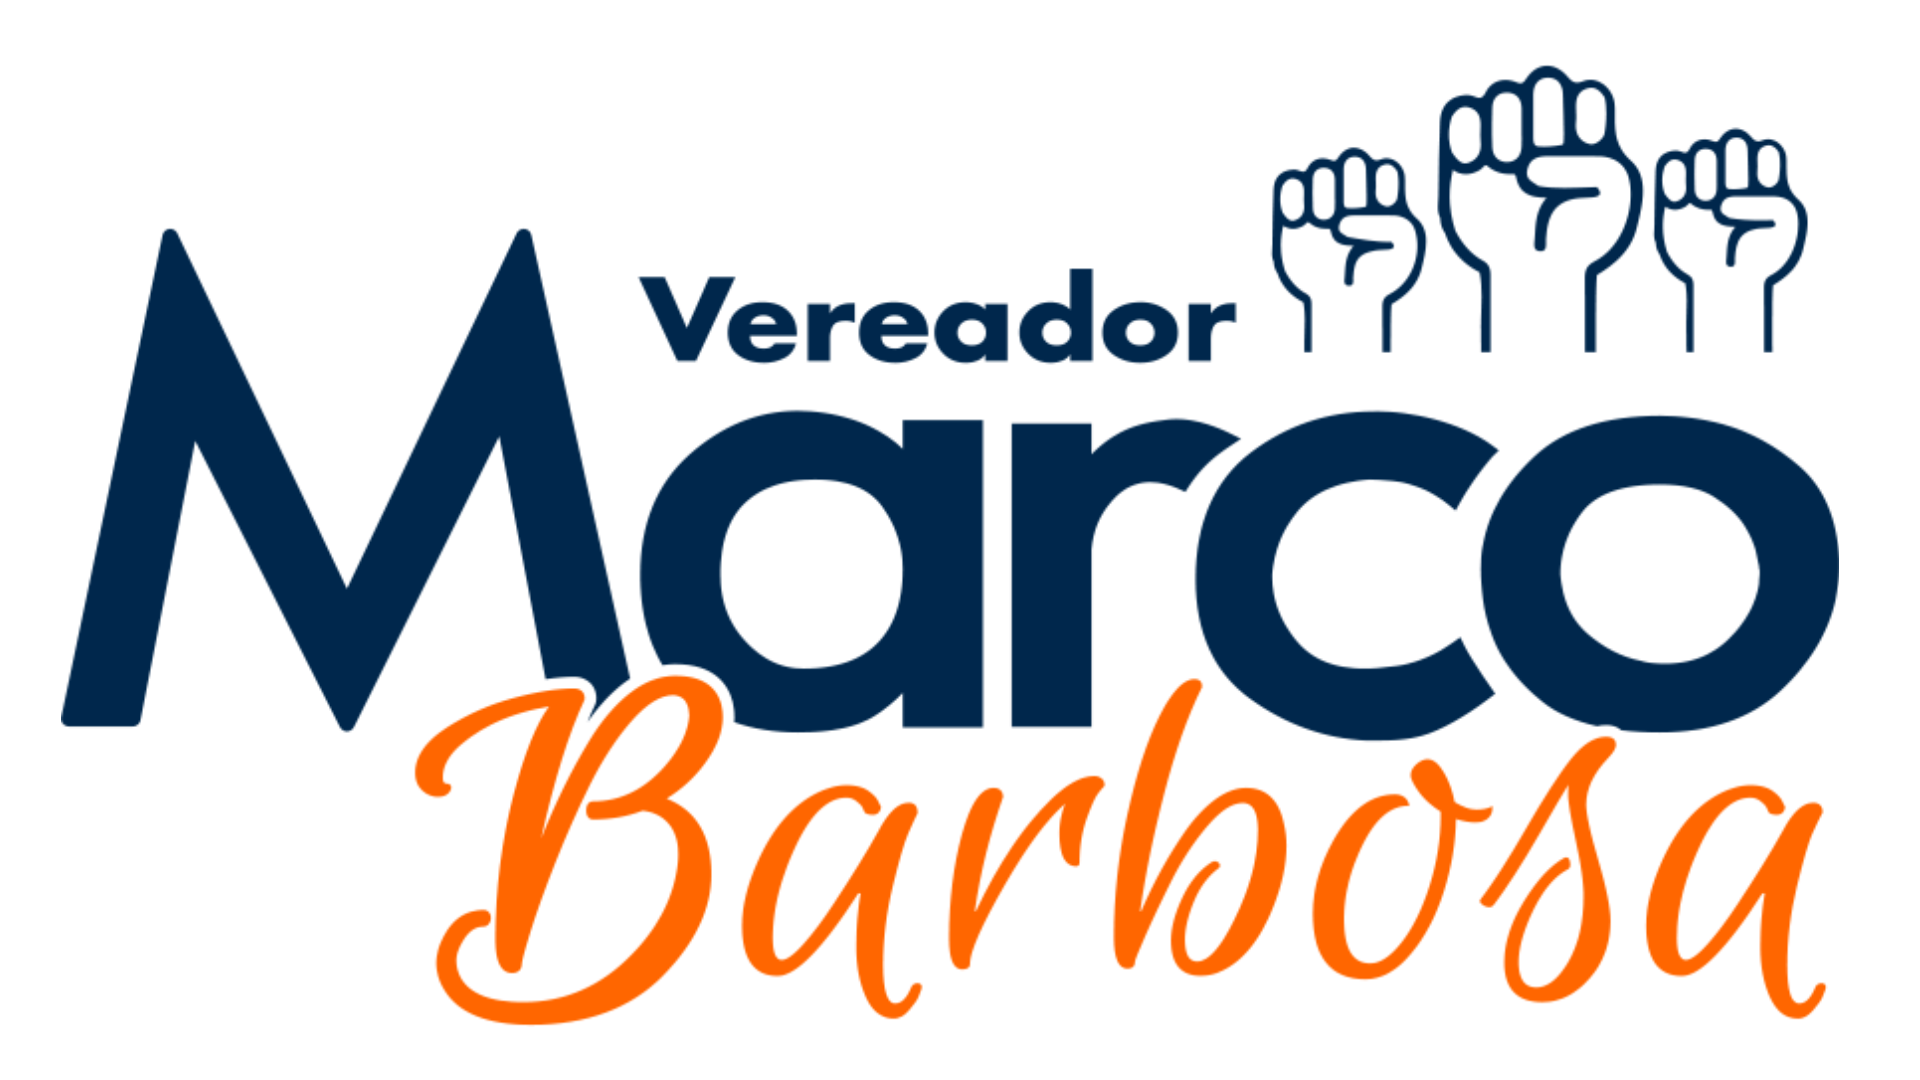 Marco Barbosa